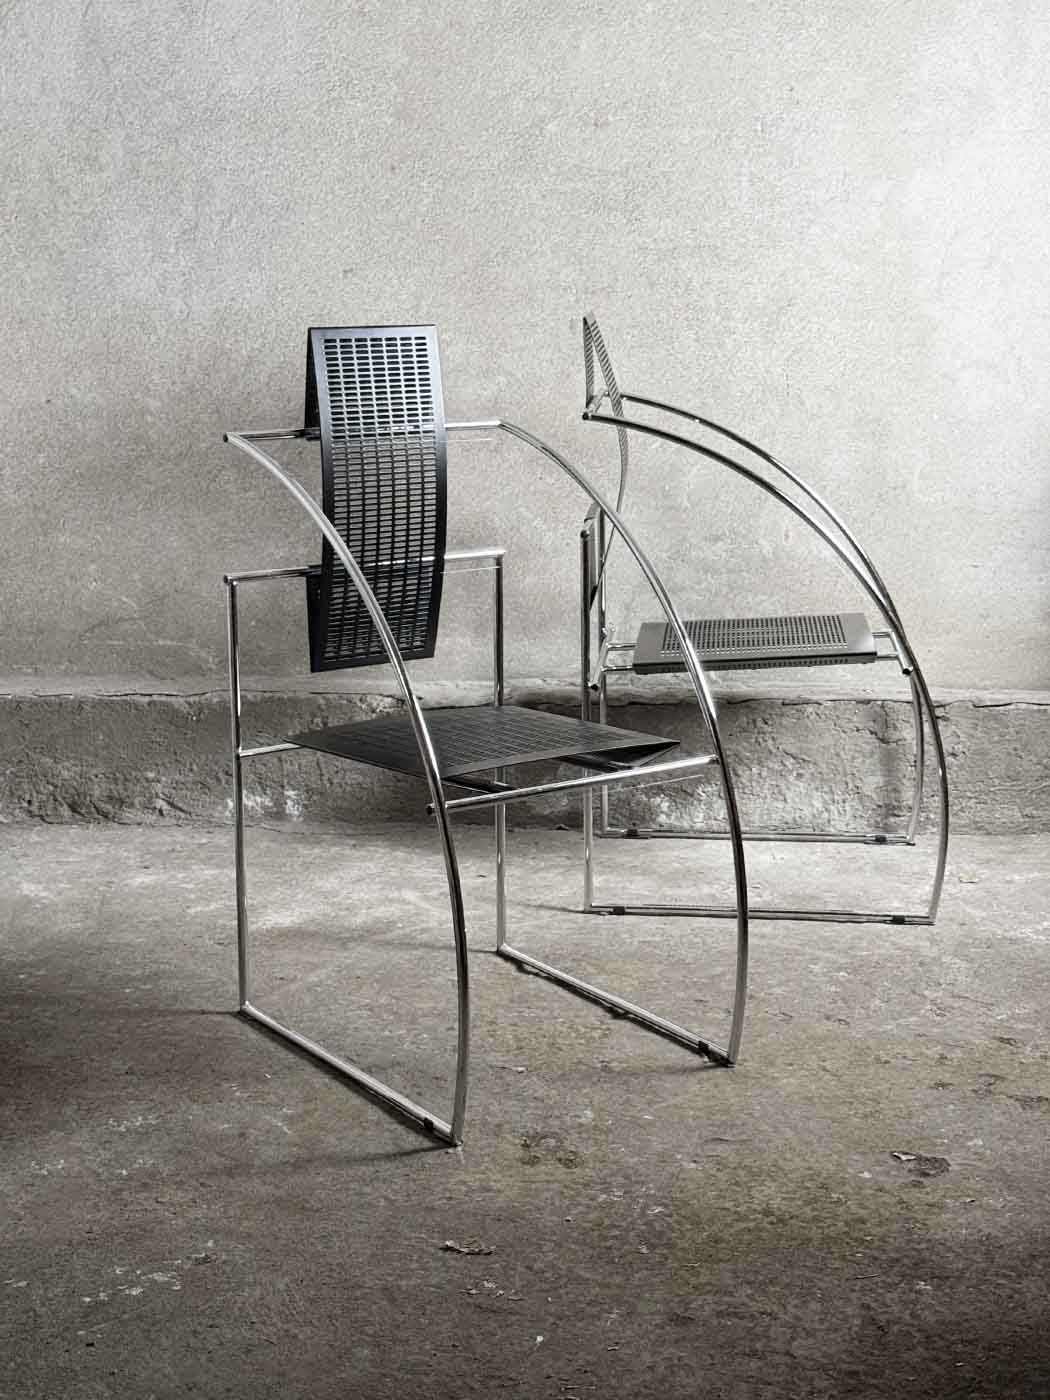 Postmodernistyczne Mistrzostwo: Krzesło Quinta od Mario Botta